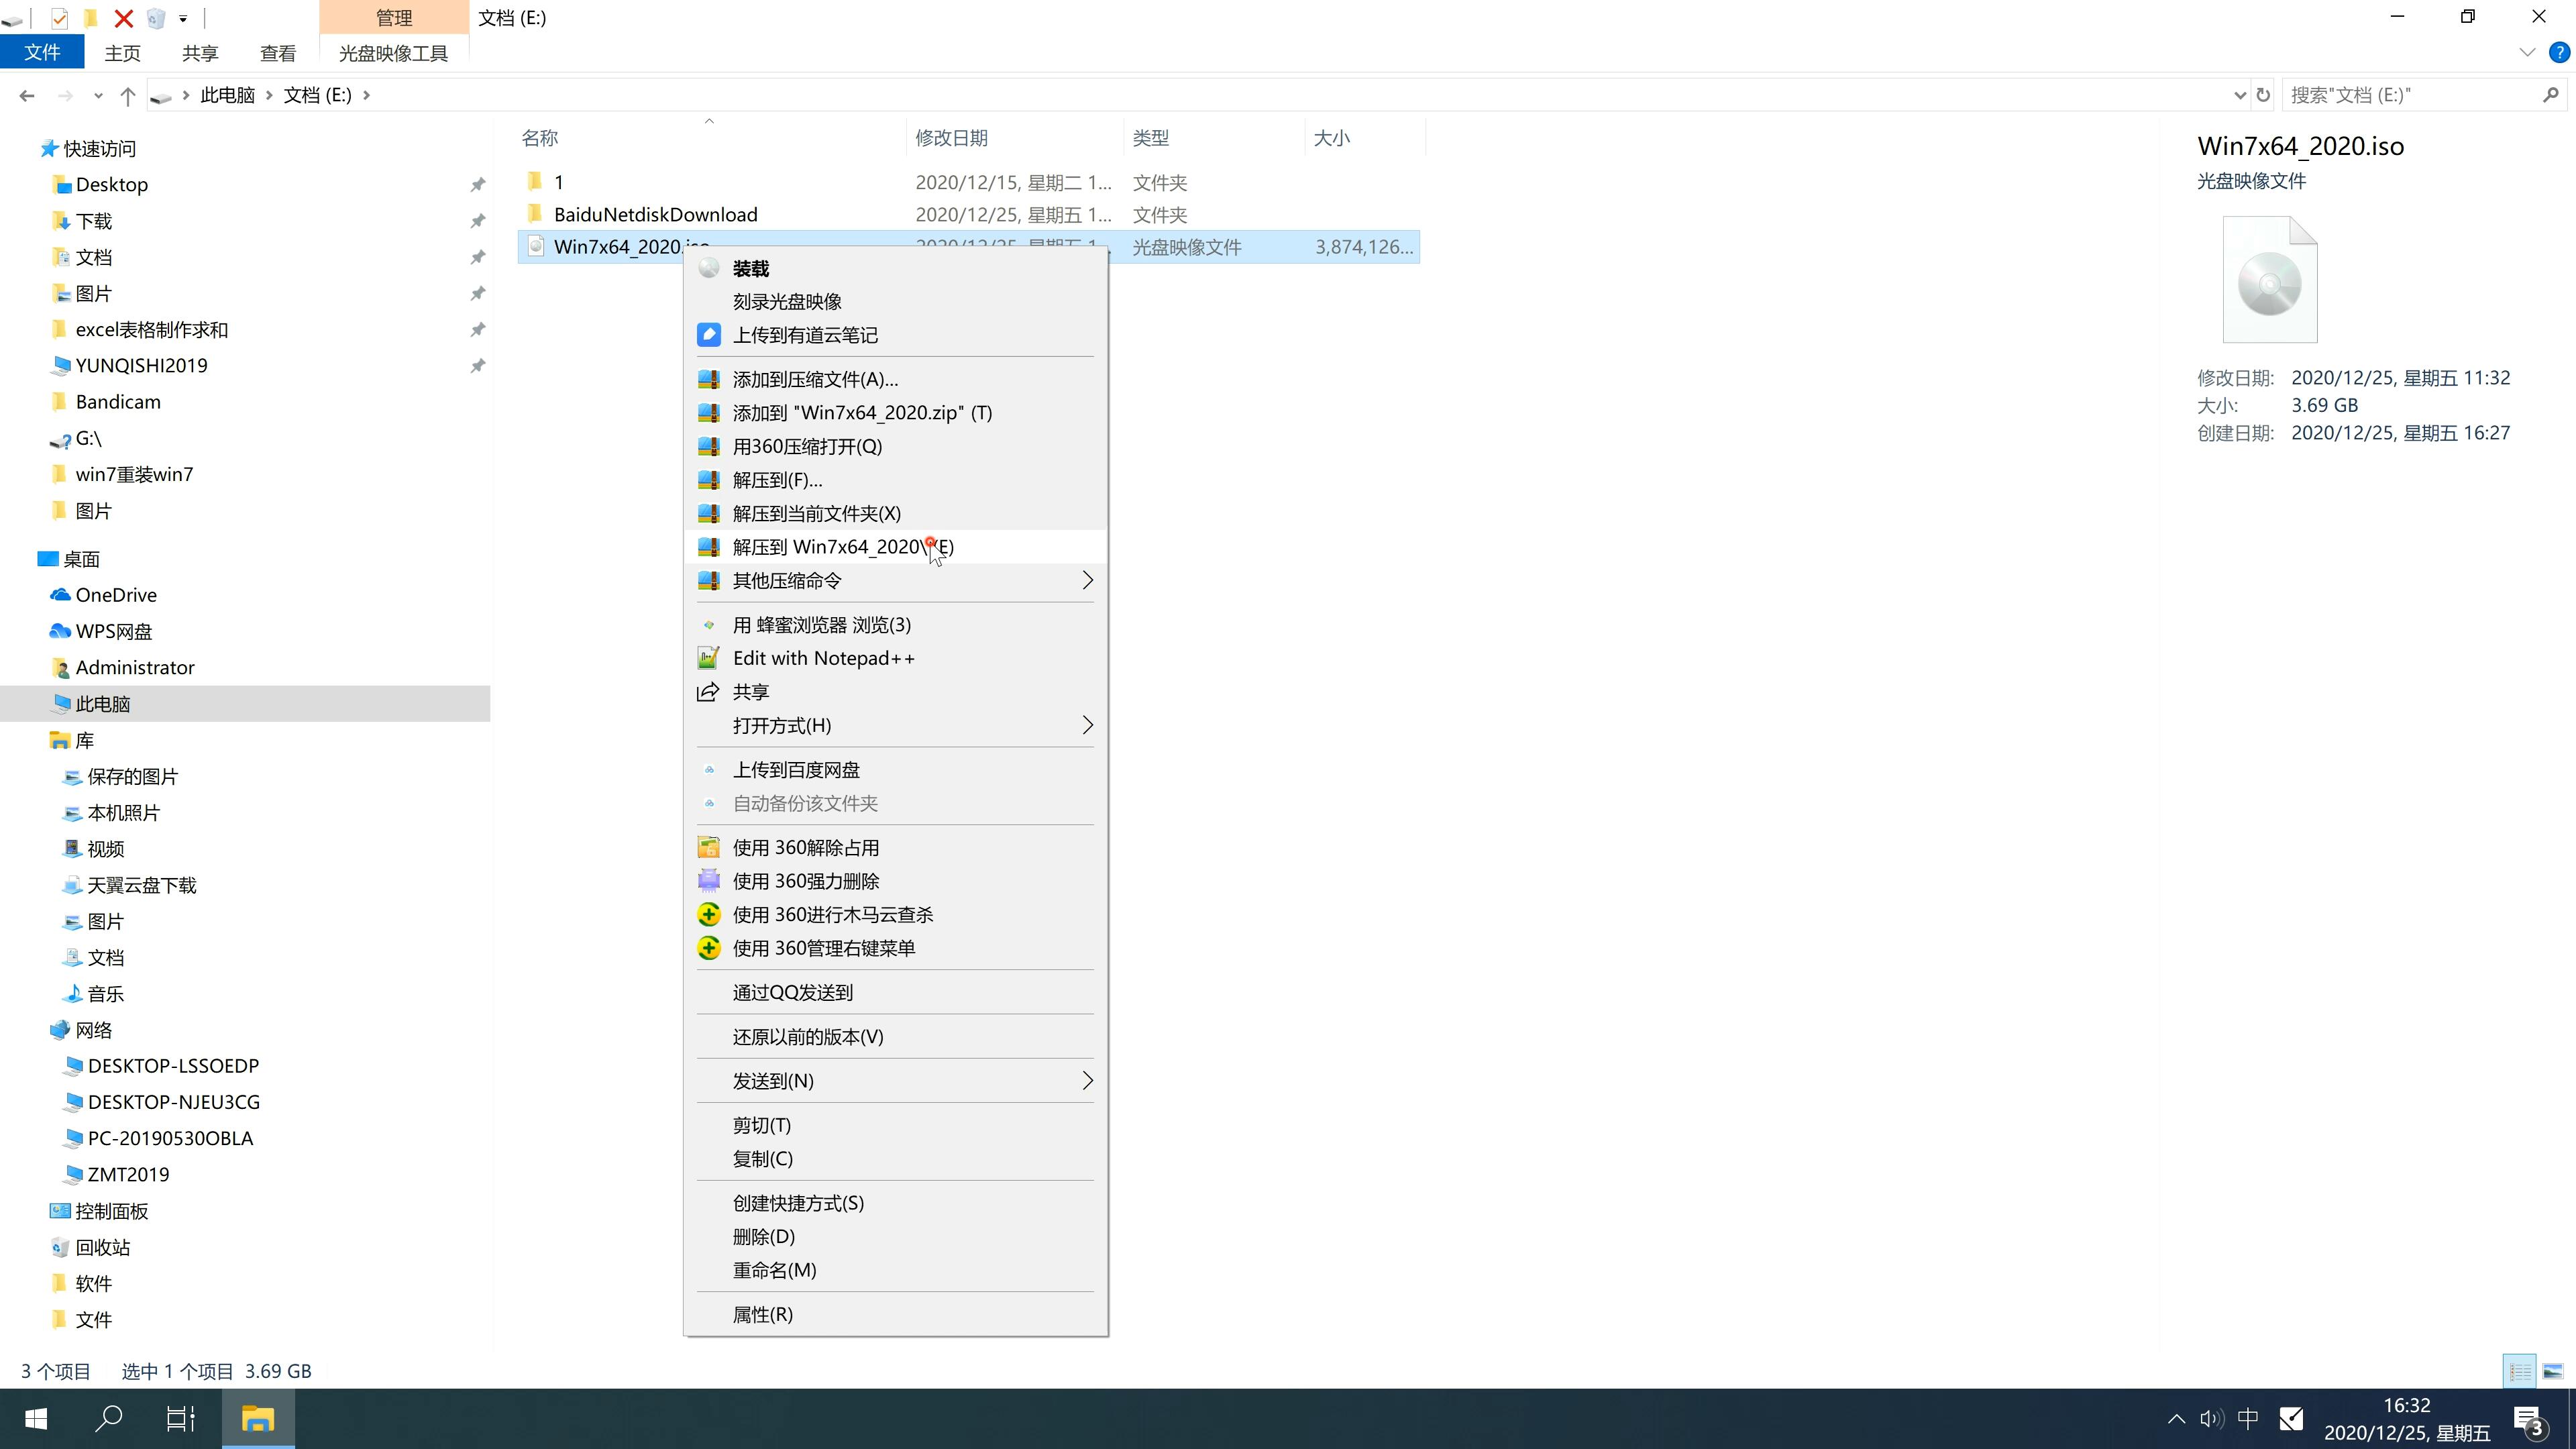 新版技术员联盟系统  windows7 x64位  正式旗舰版 V2022.09(2)